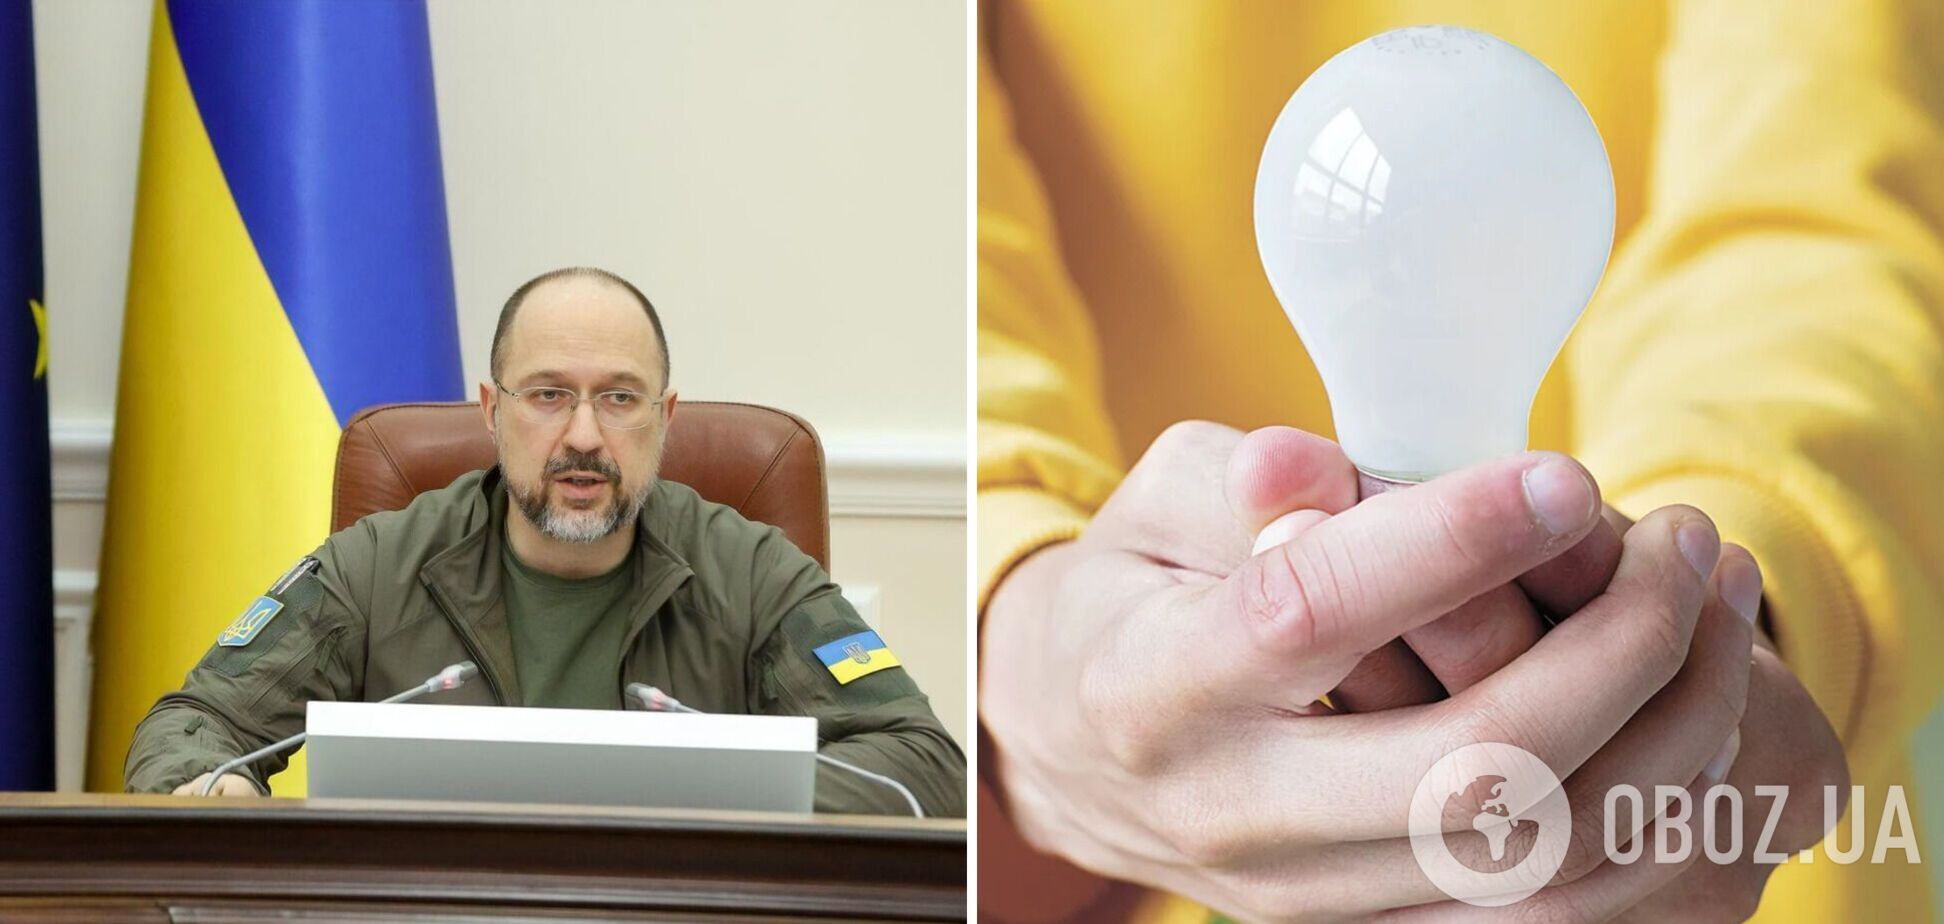 Украинцам раздадут по пять LED-ламп